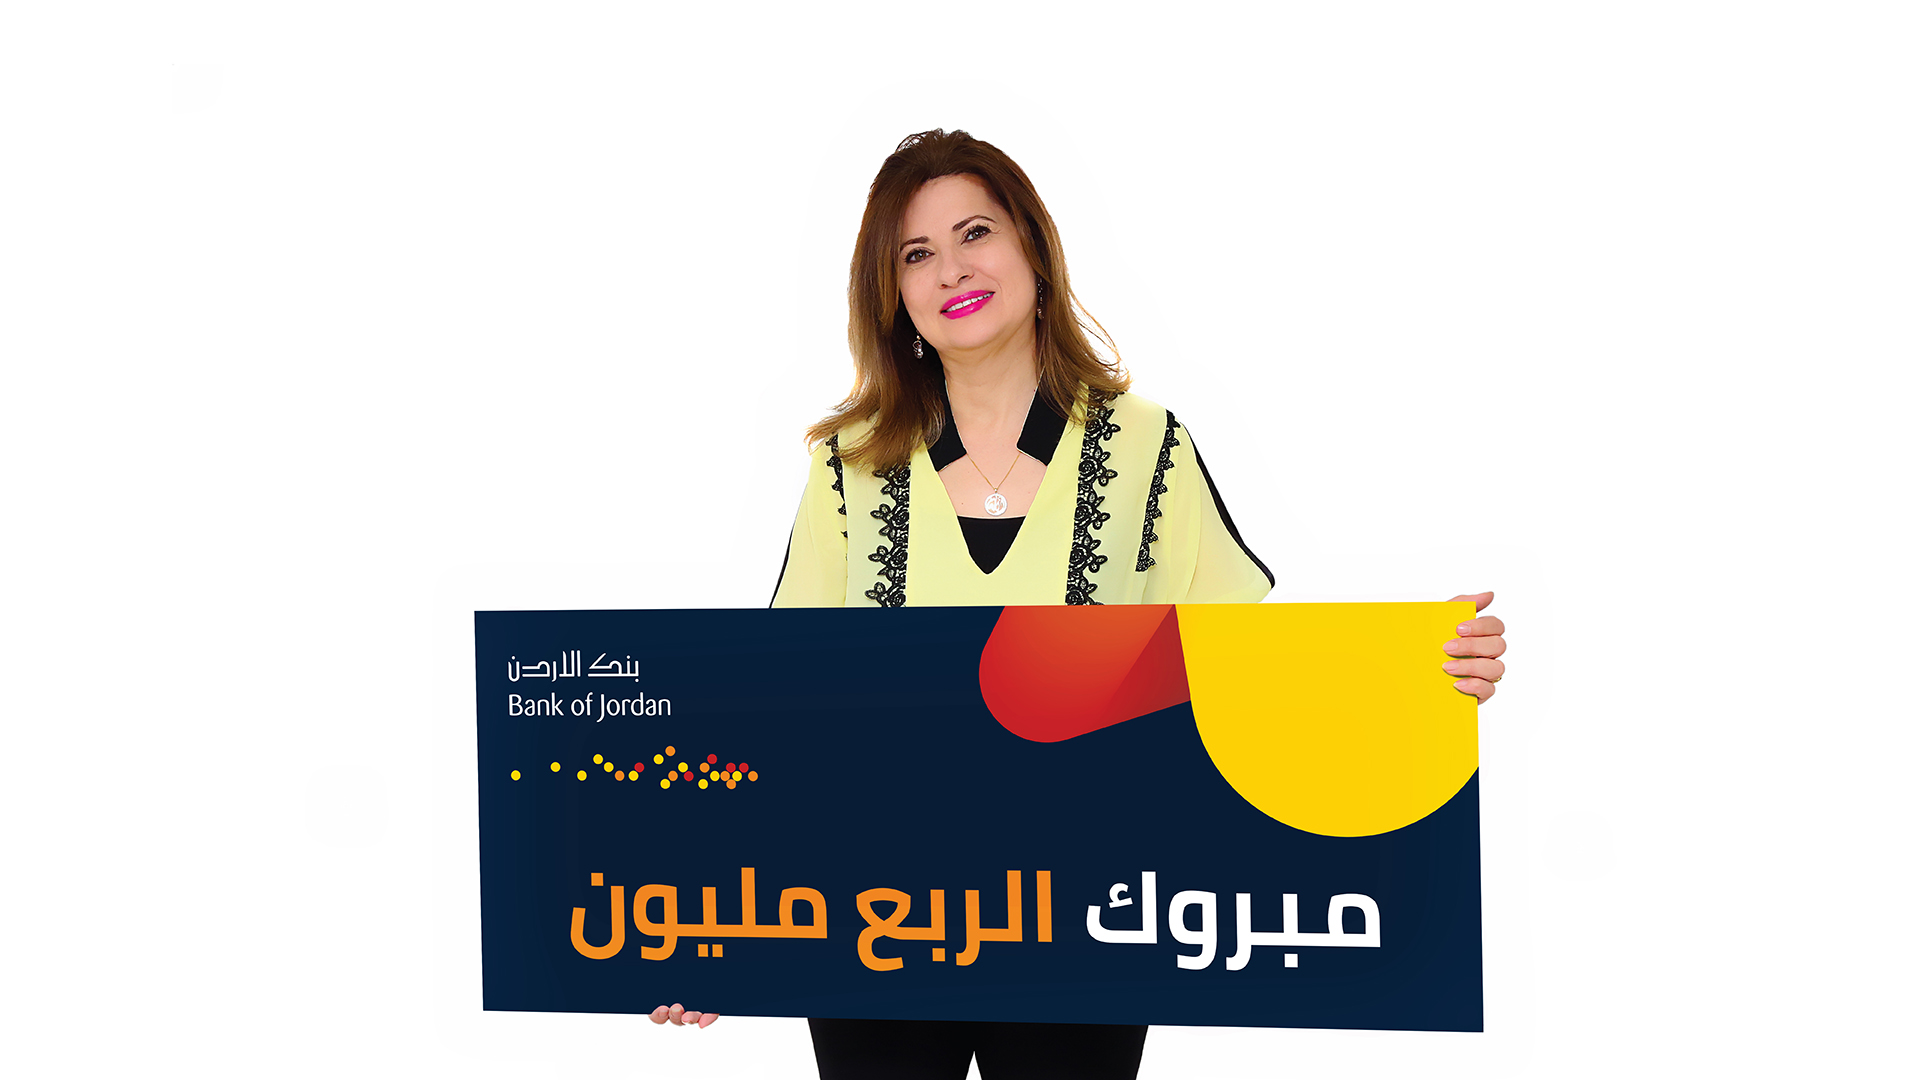 السيدة منال محمد القلقيلي الفائزة العشرون بجائزة الربع مليون دينار من بنك الأردن 